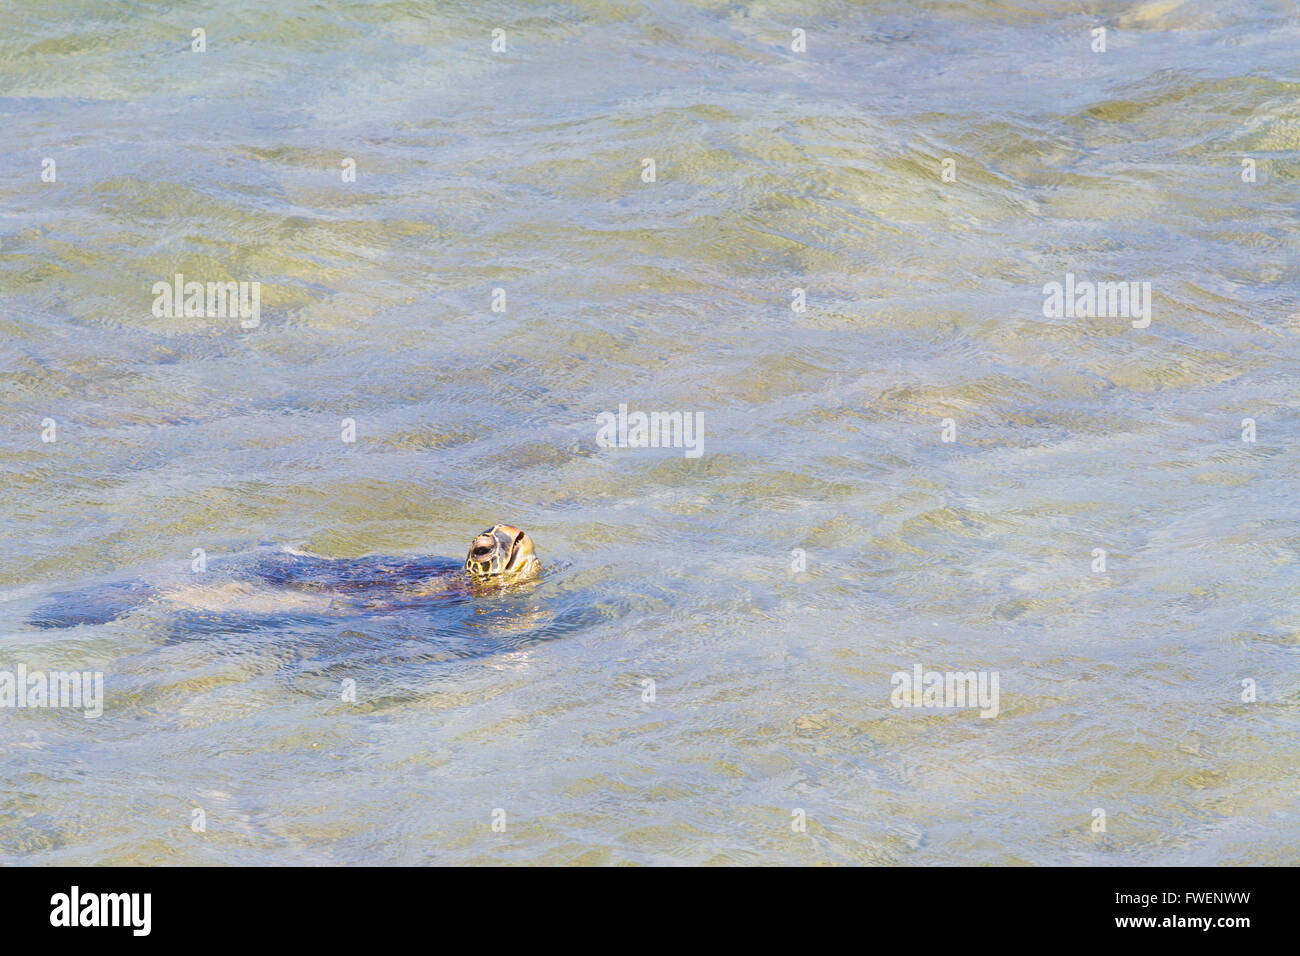 Una rara immagine di una tartaruga di mare arrivando fino ad aria nelle acque dell'oceano della North Shore di Oahu. Questo incredibile animale è nuotare nella piscina Foto Stock